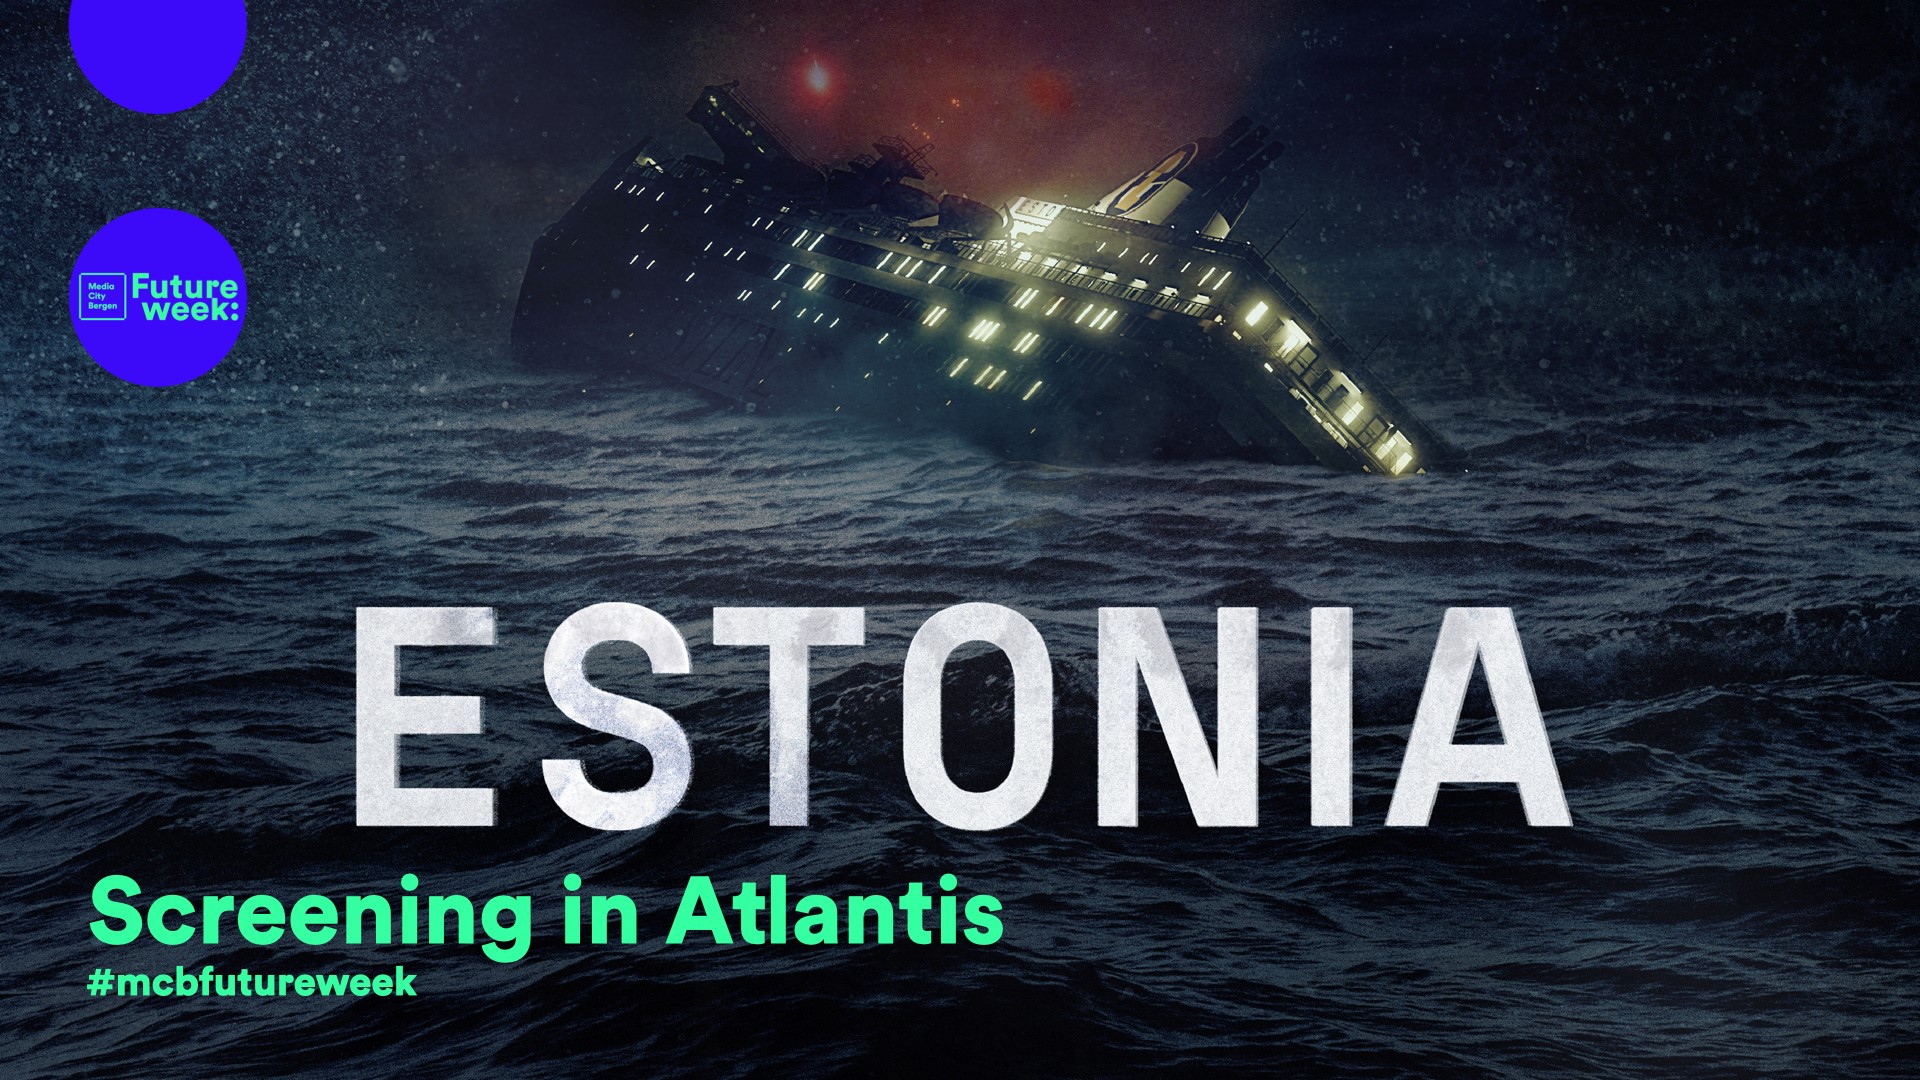 Sinking Estonia ship